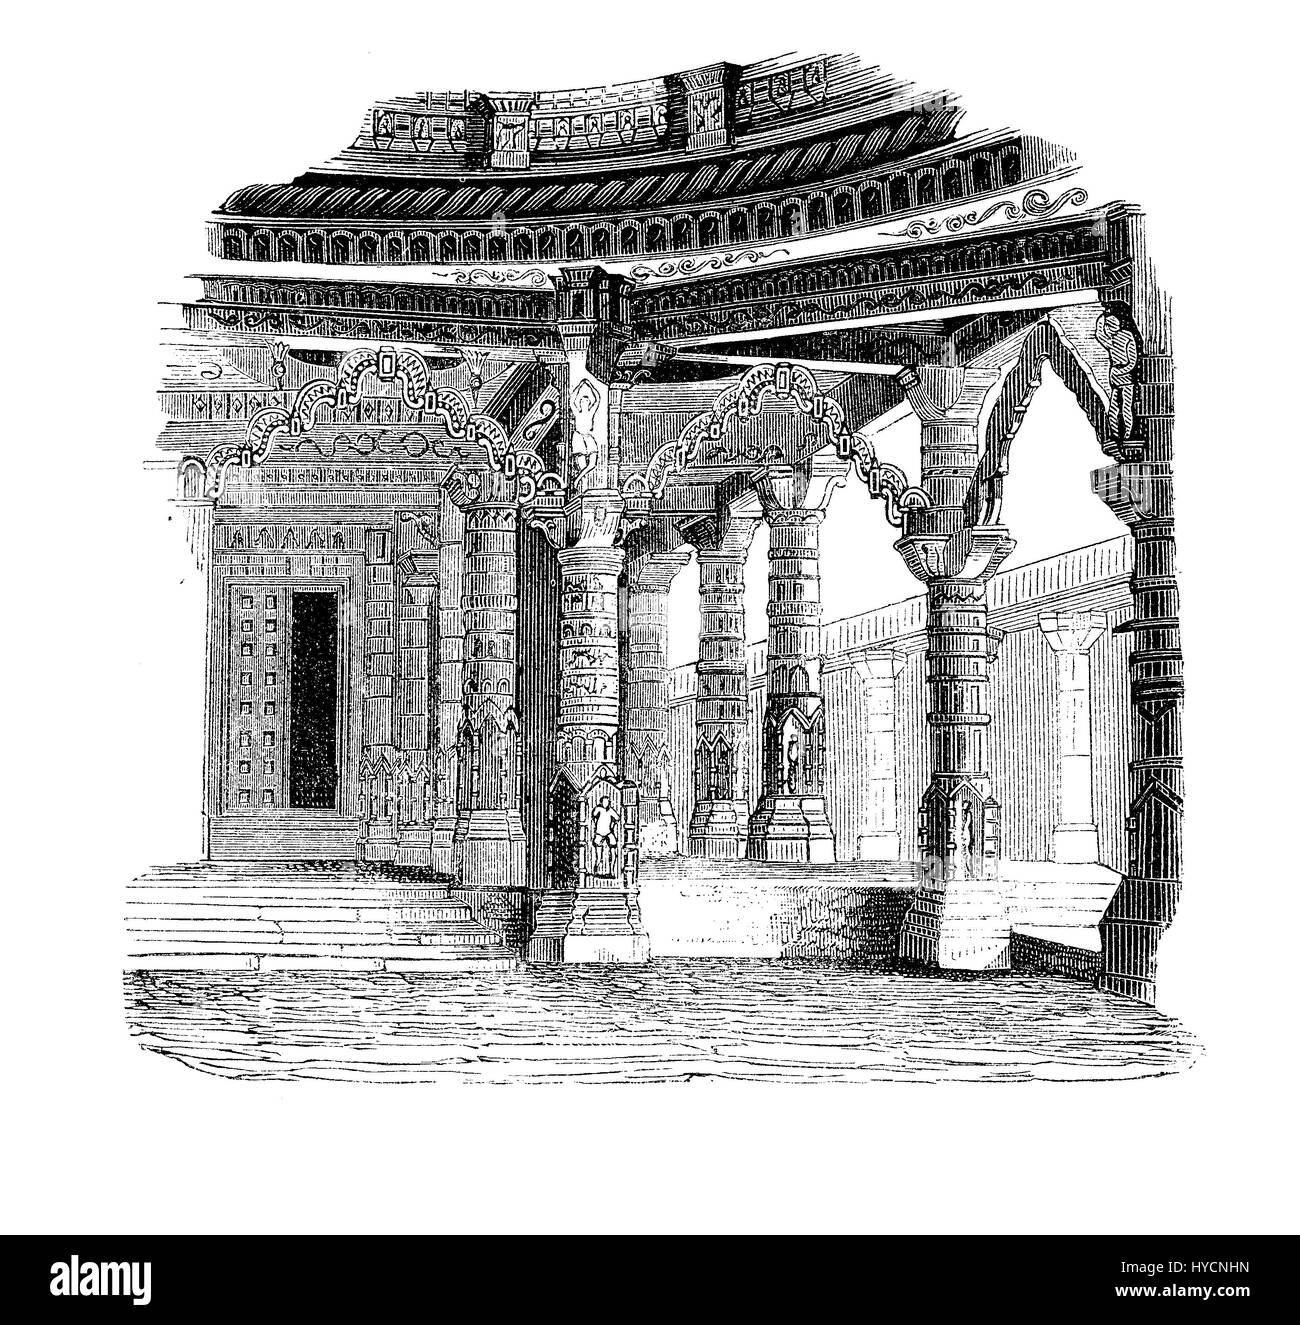 Incisione vintage del tempio di Vimala Sah su Mount Abu in Rajasthan - India con elaborati scolpiti colonne di marmo bianco, le volte e i soffitti di perfezione architettonica . Foto Stock